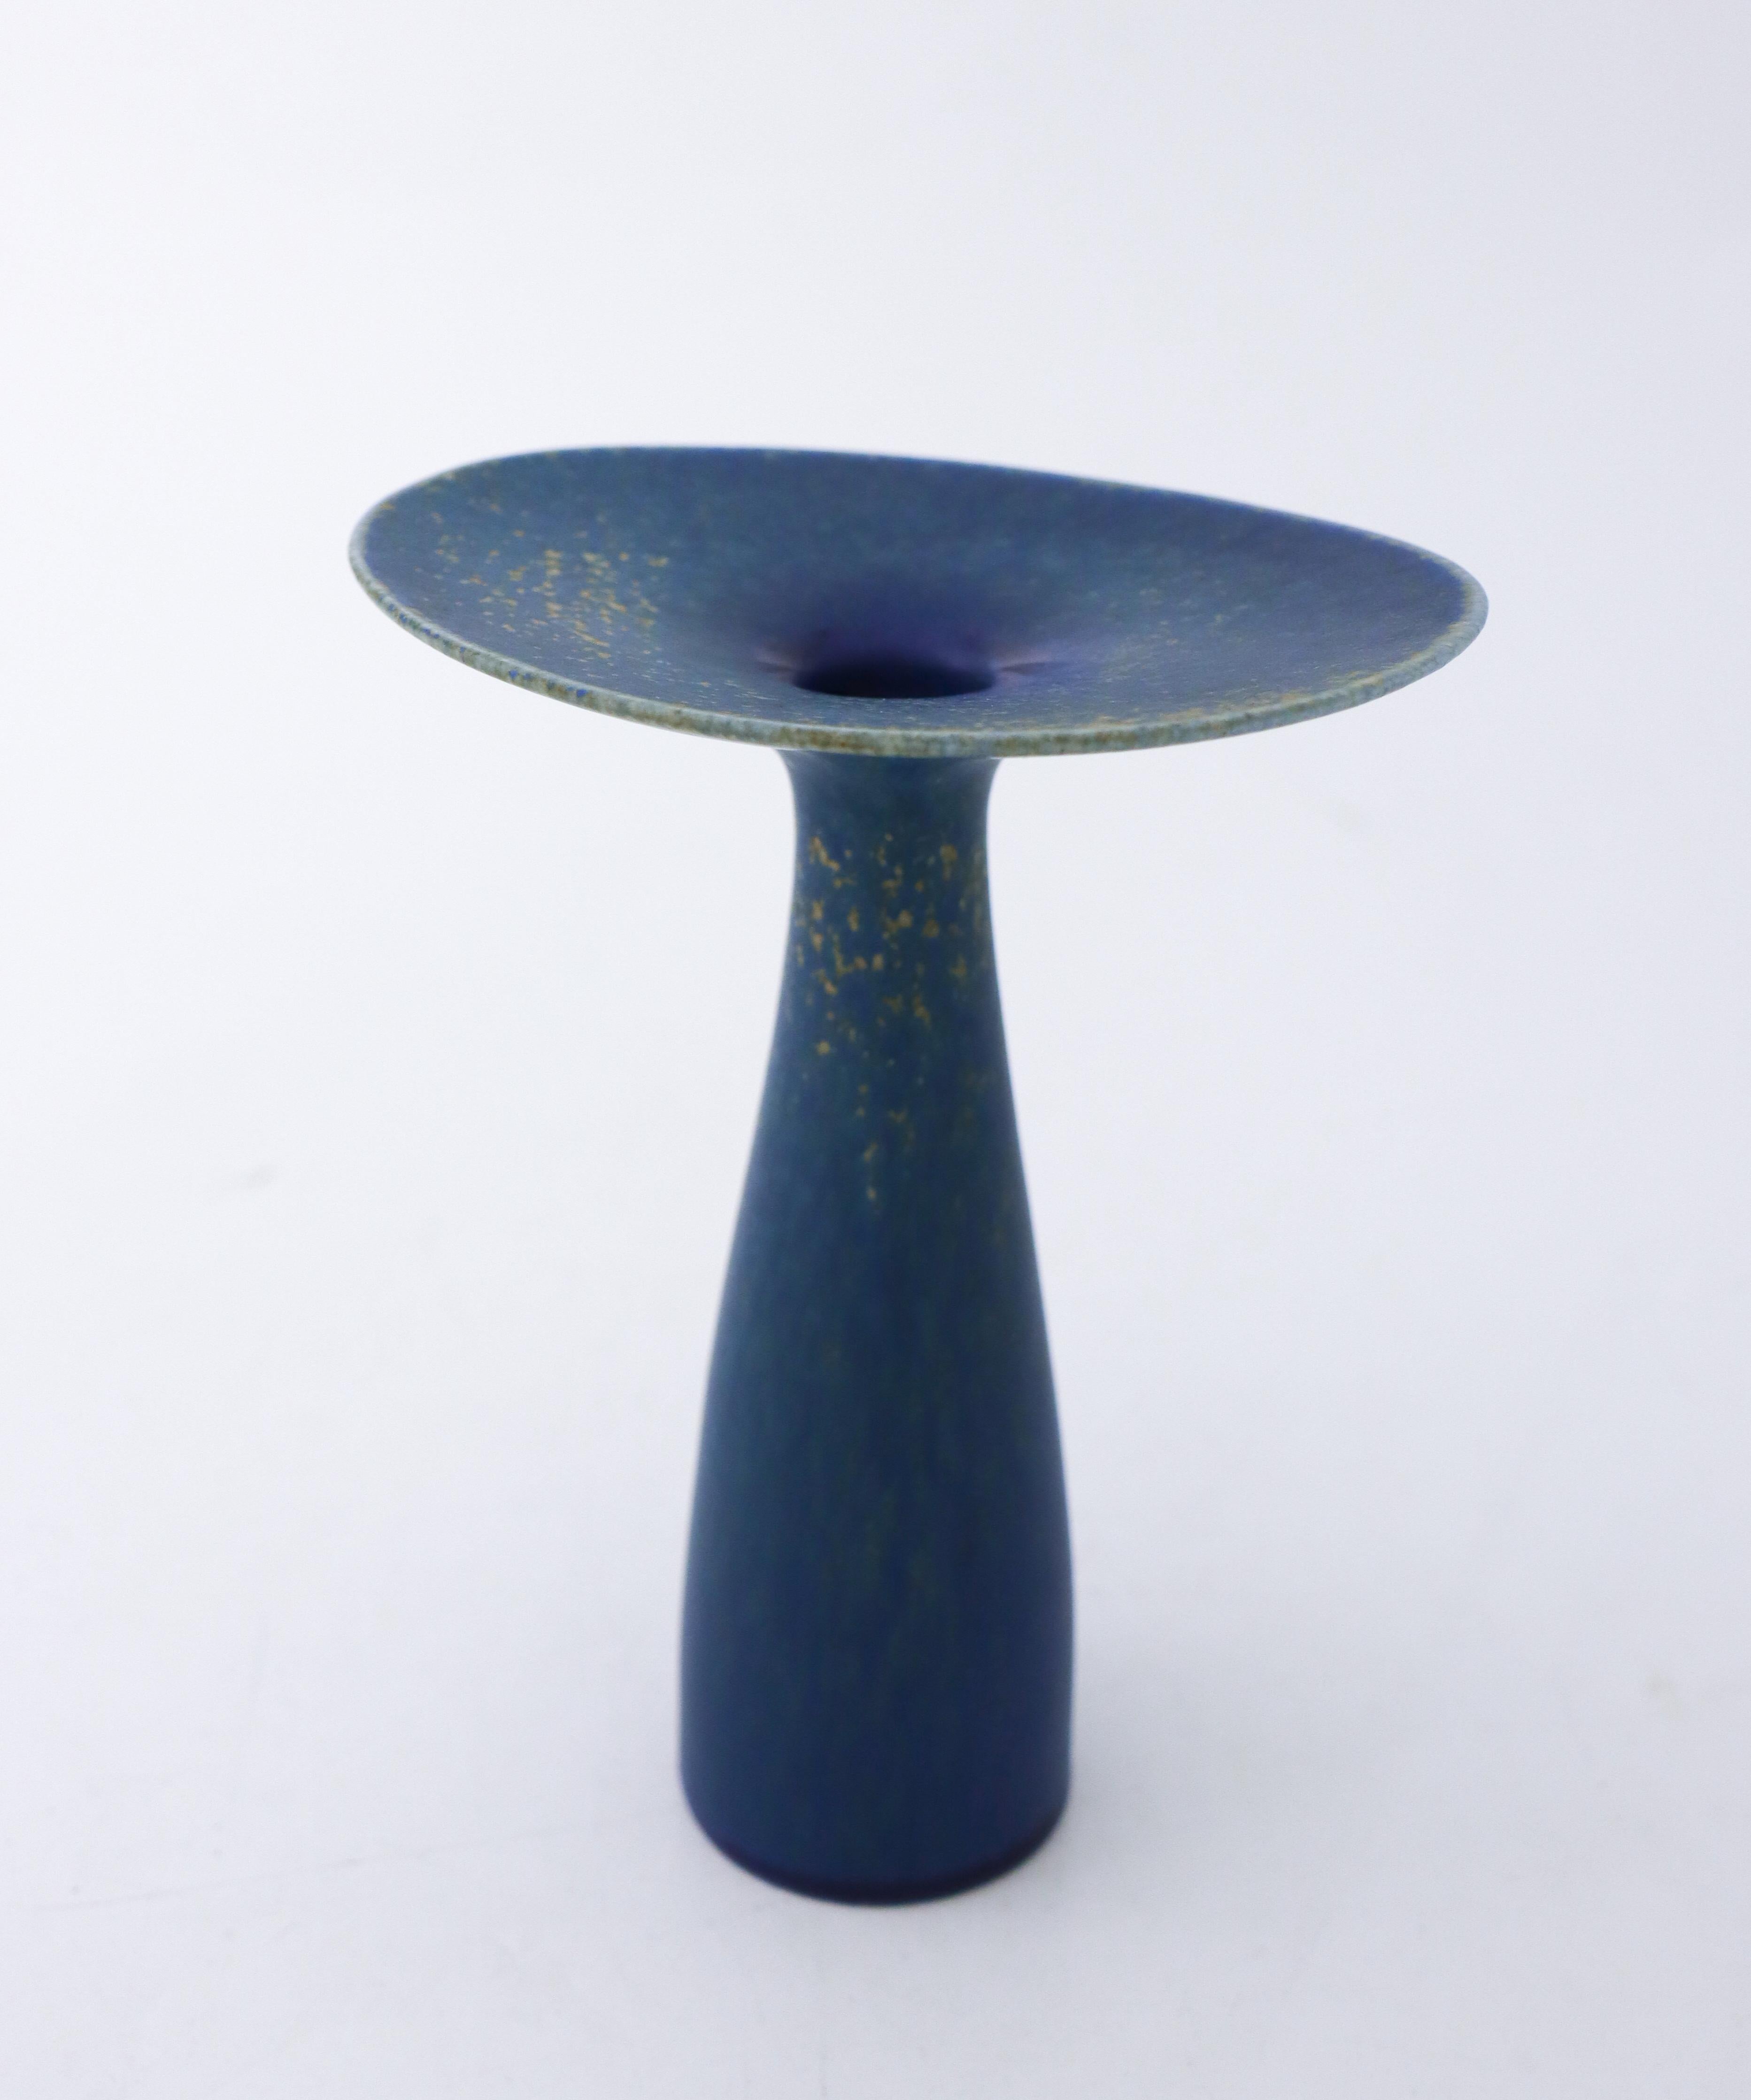 Scandinavian Modern Stig Lindberg Blue Vase, Vitrin, Gustavsberg, Mid-20th Century Design For Sale